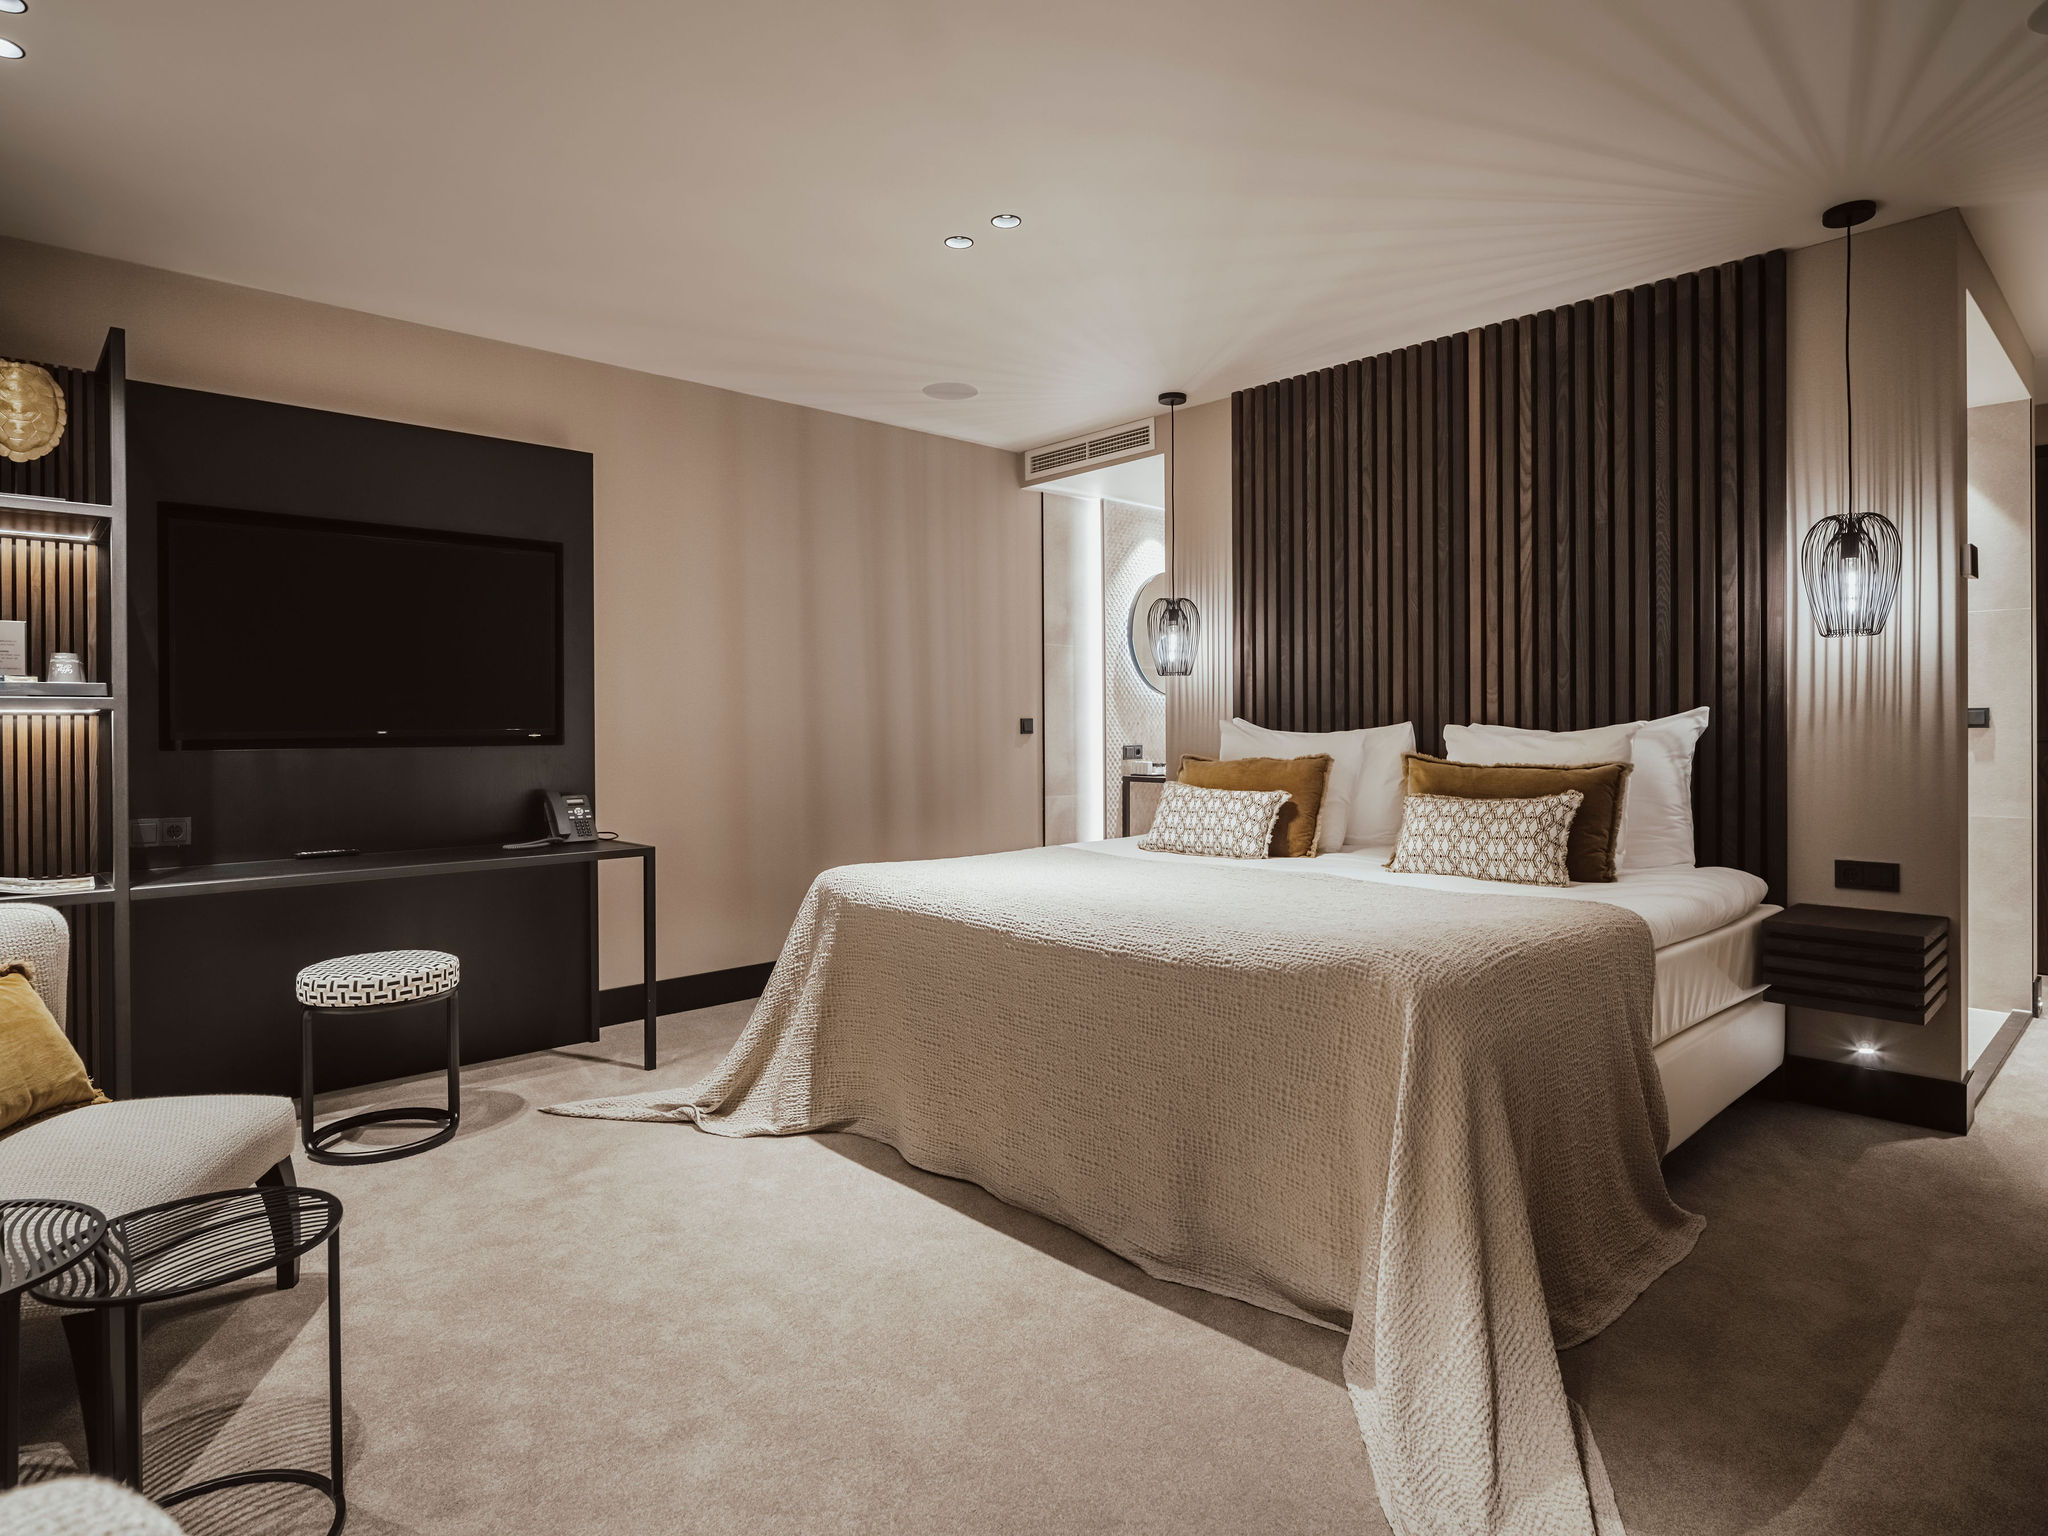 Luxurious and stylish accommodation